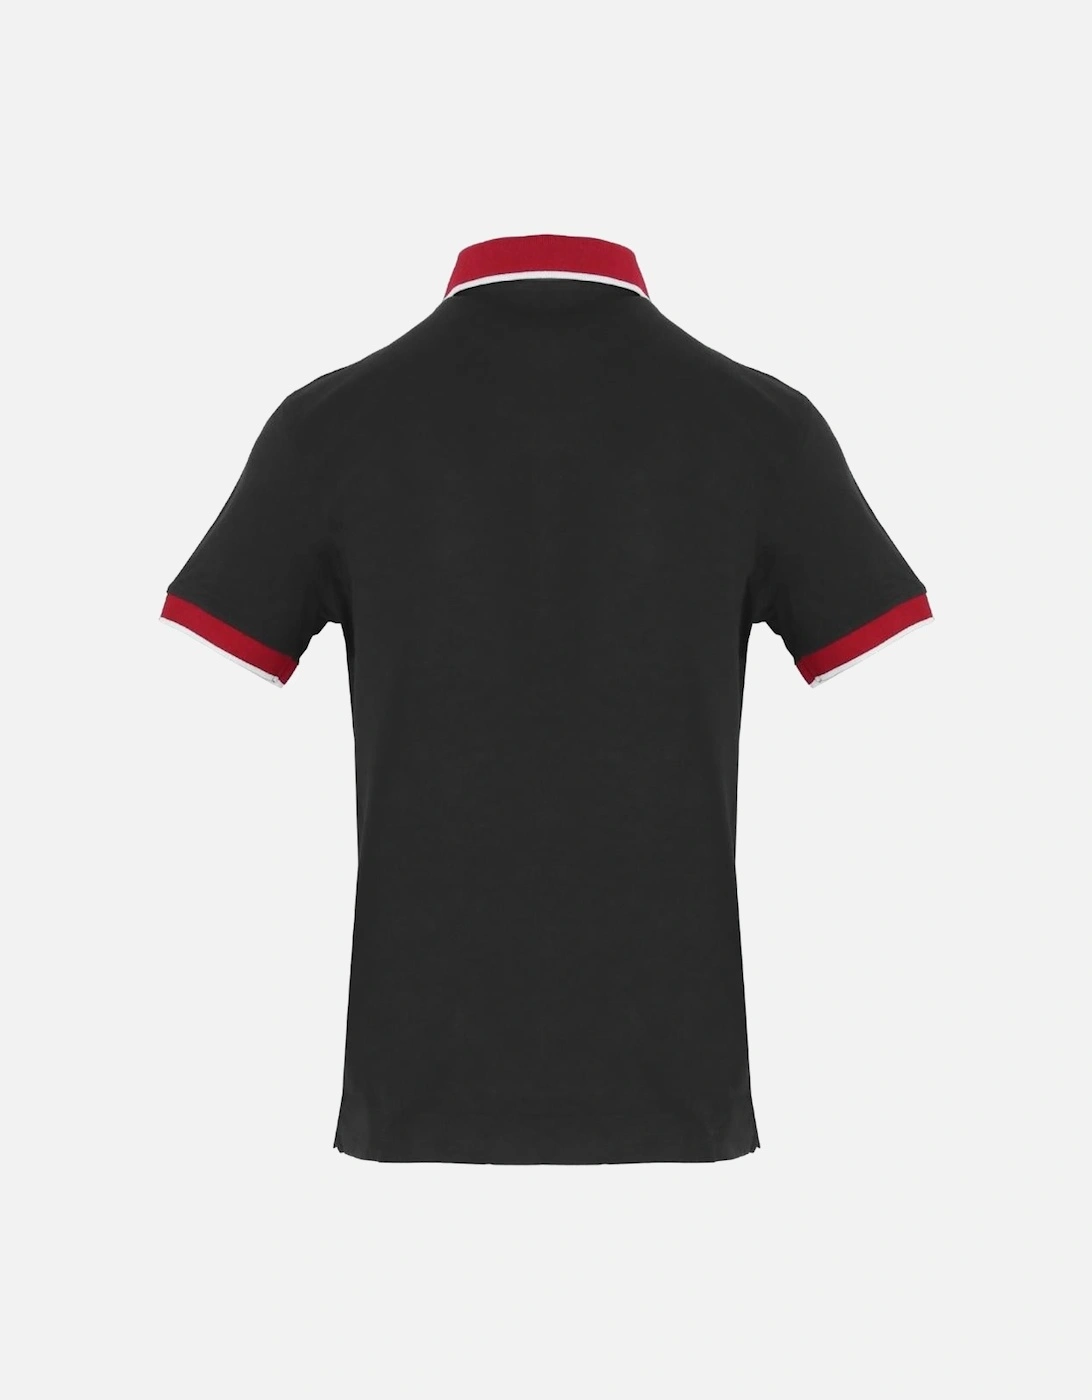 Sailmakers Black Polo Shirt